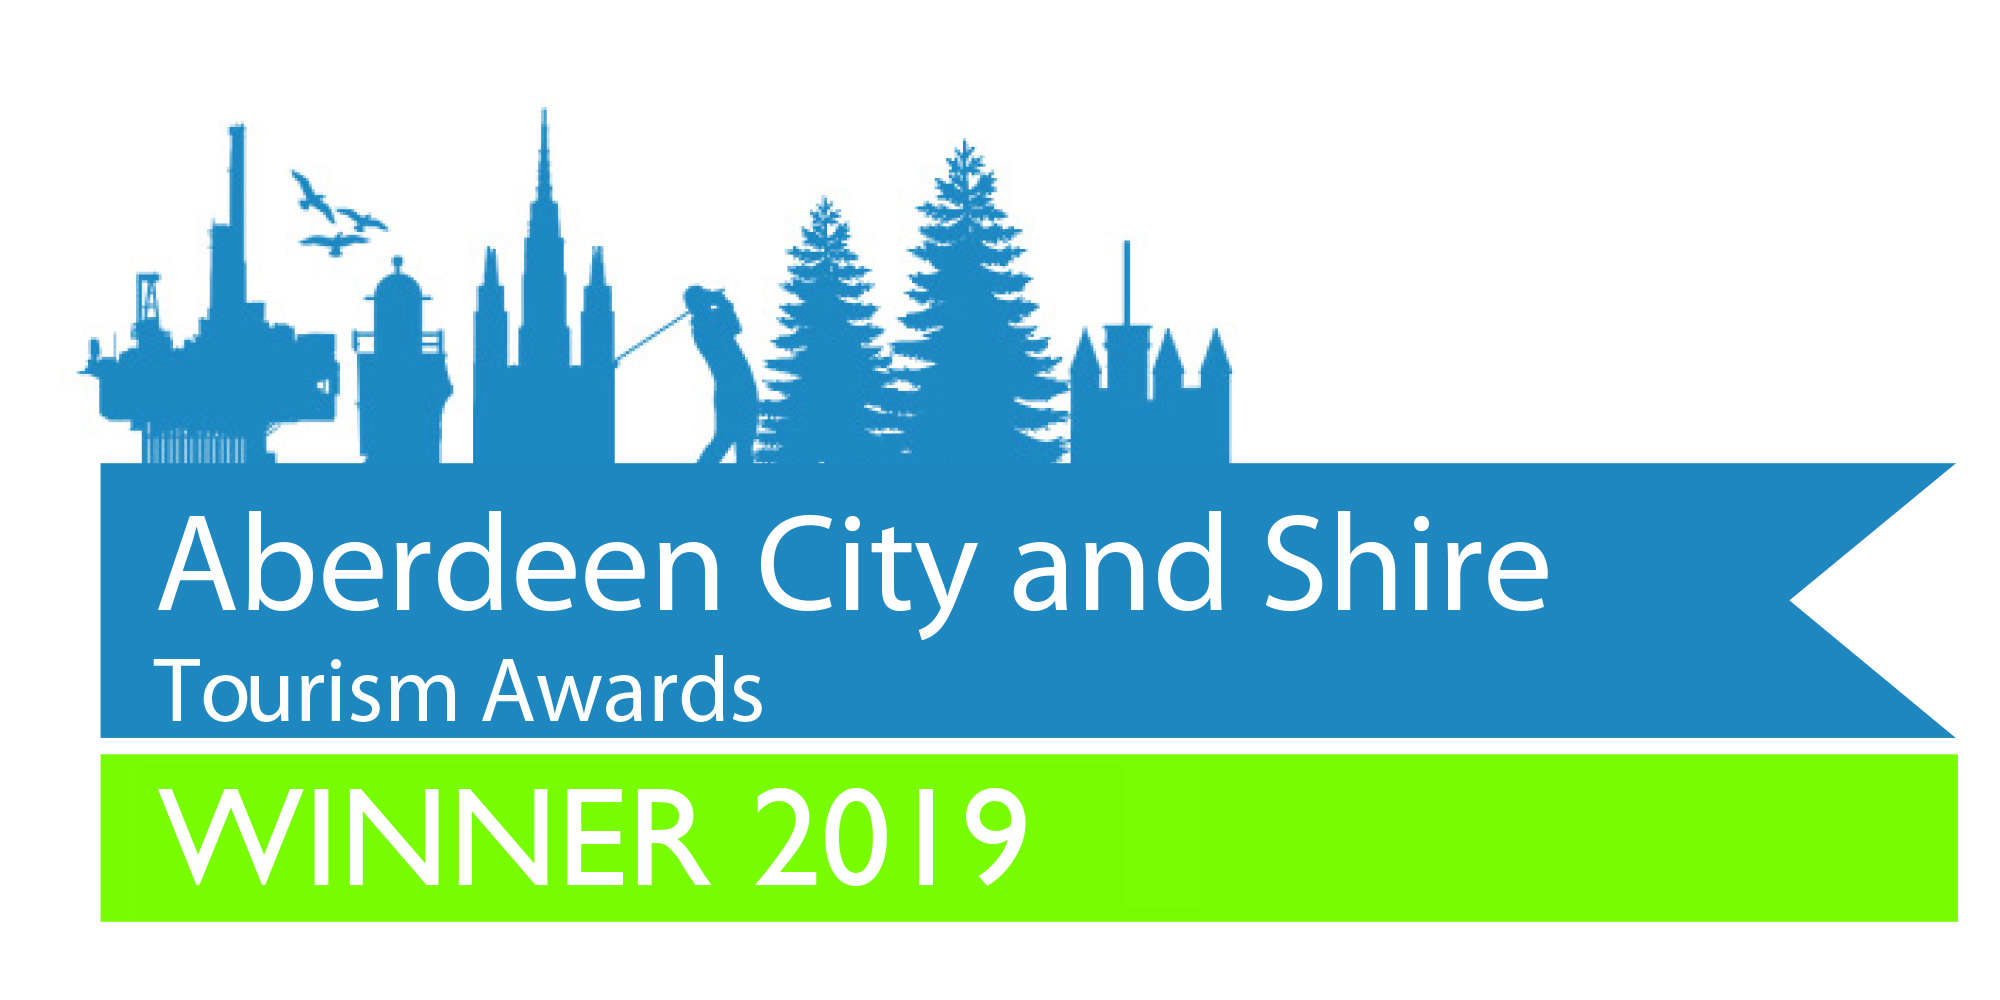 Aberdeen City and Shire Tourism Award 2019 Winner